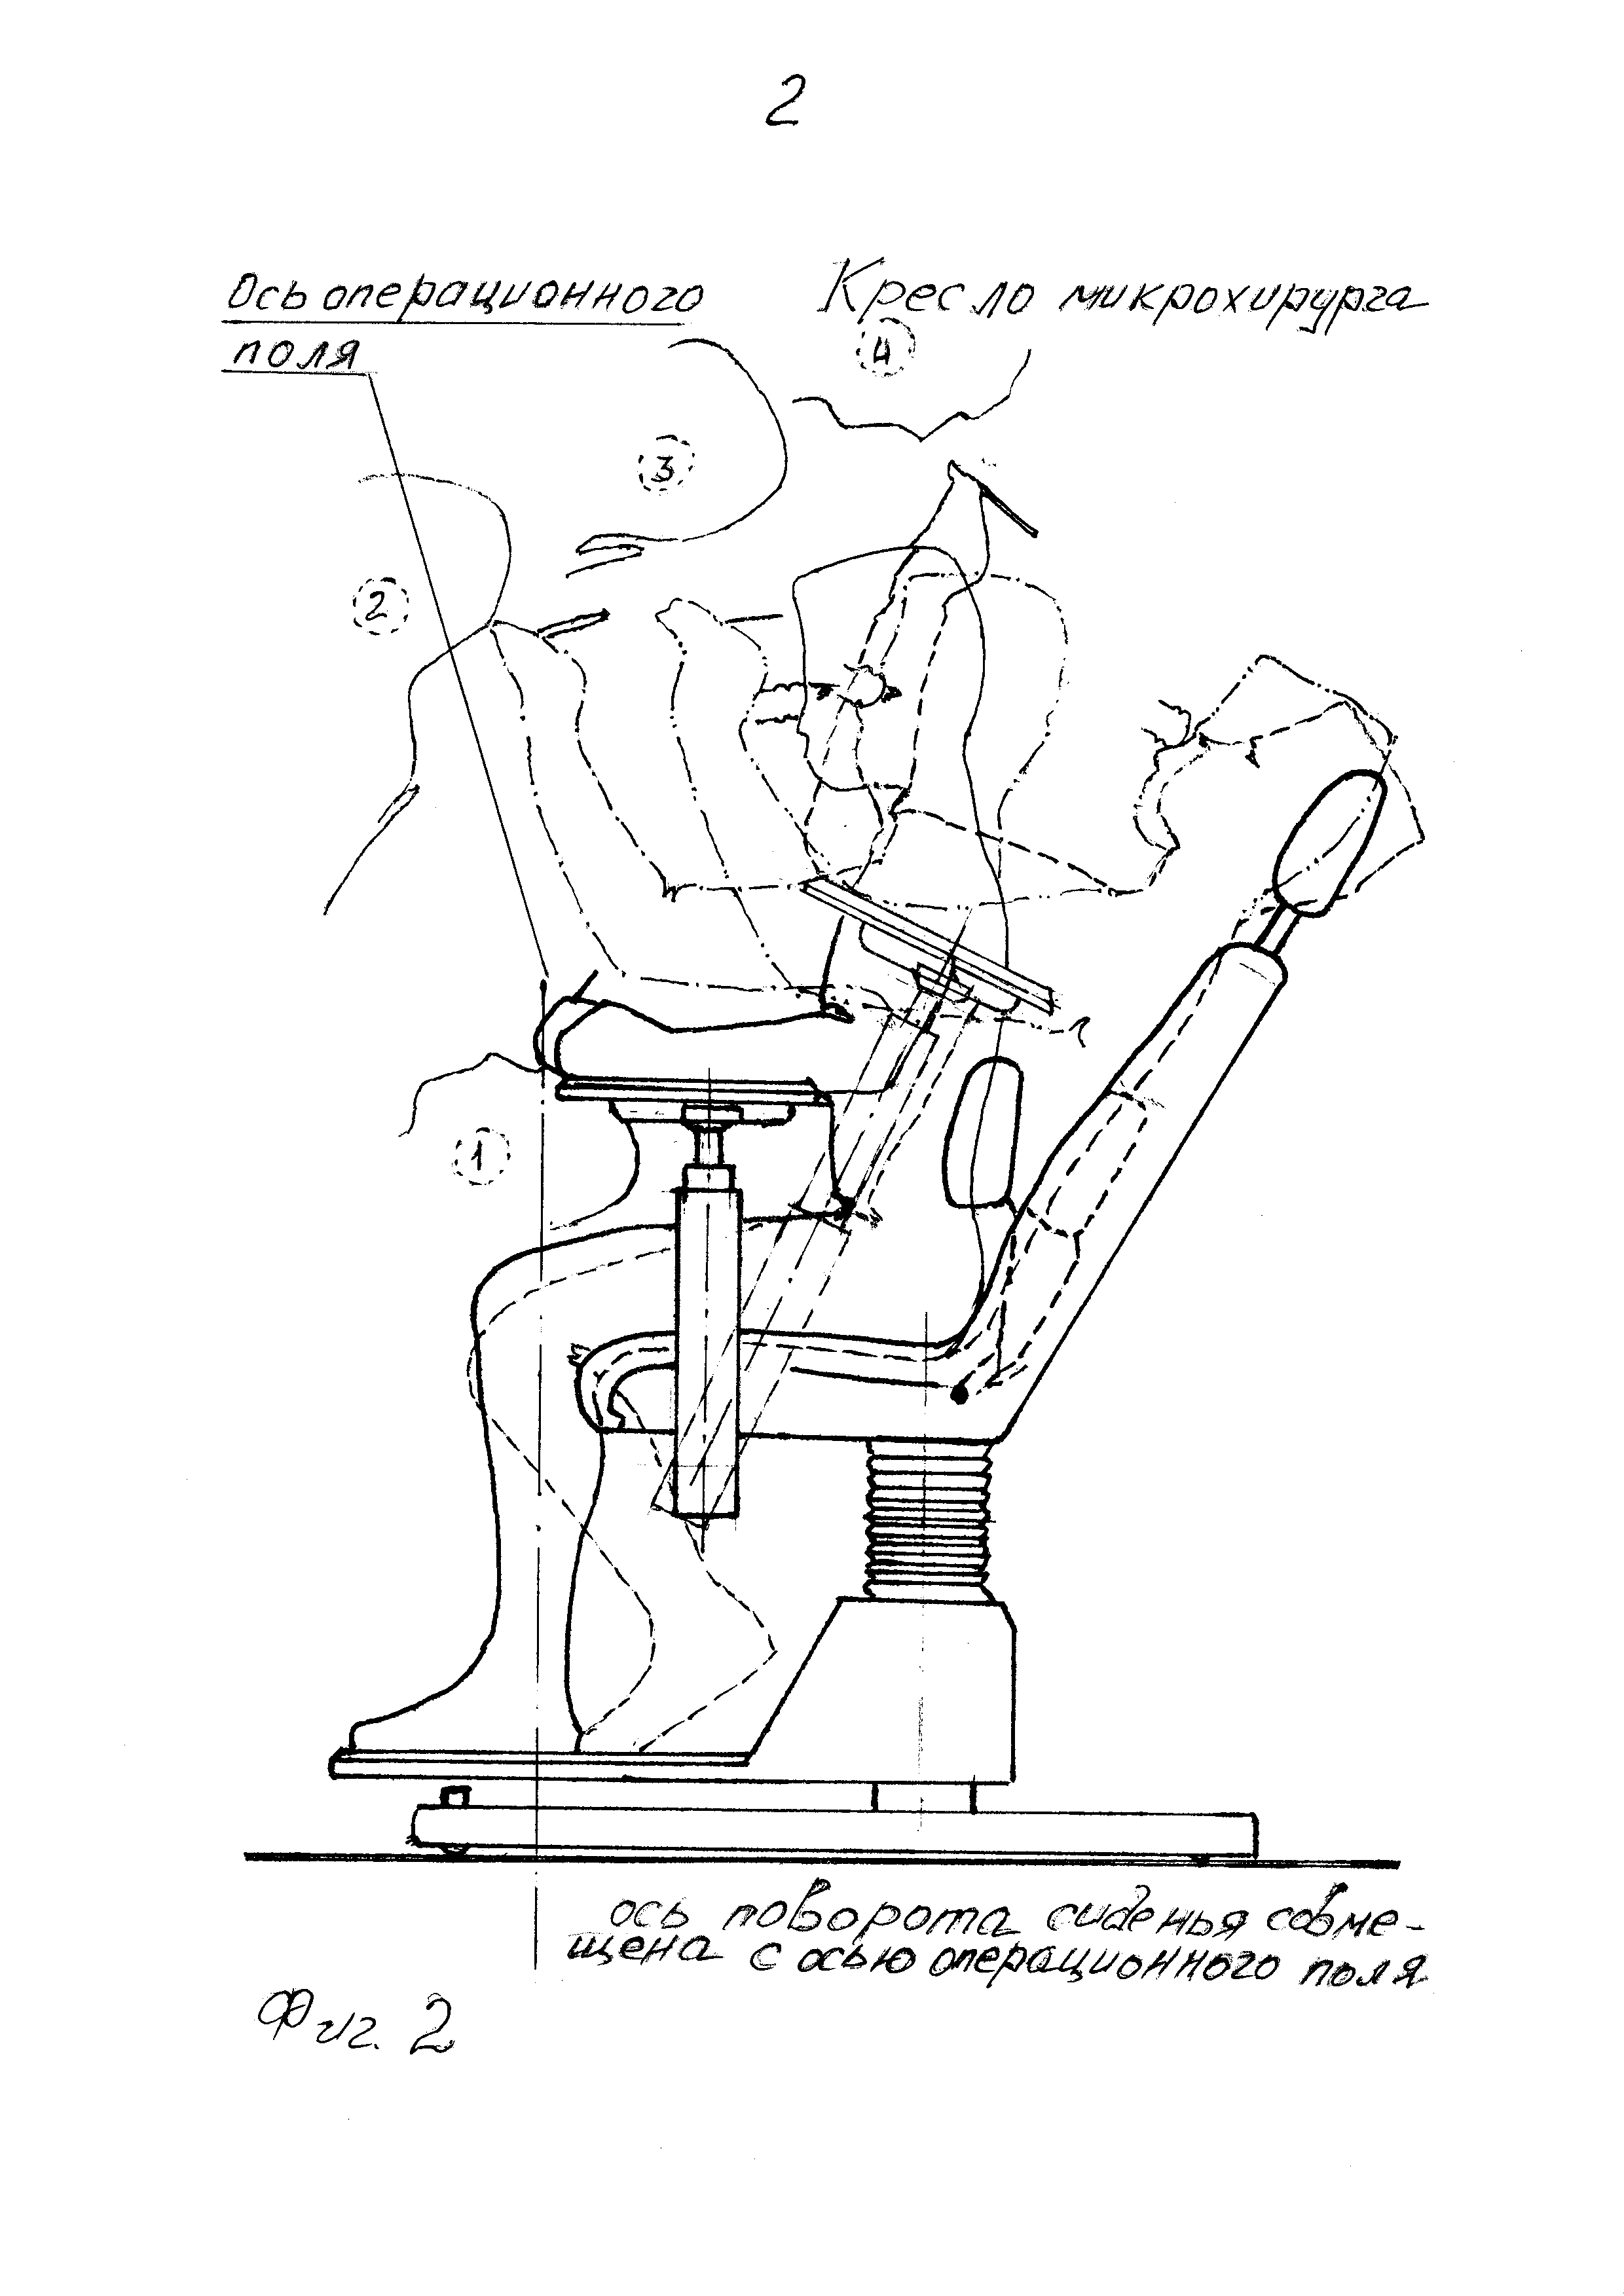 Кресло микрохирурга